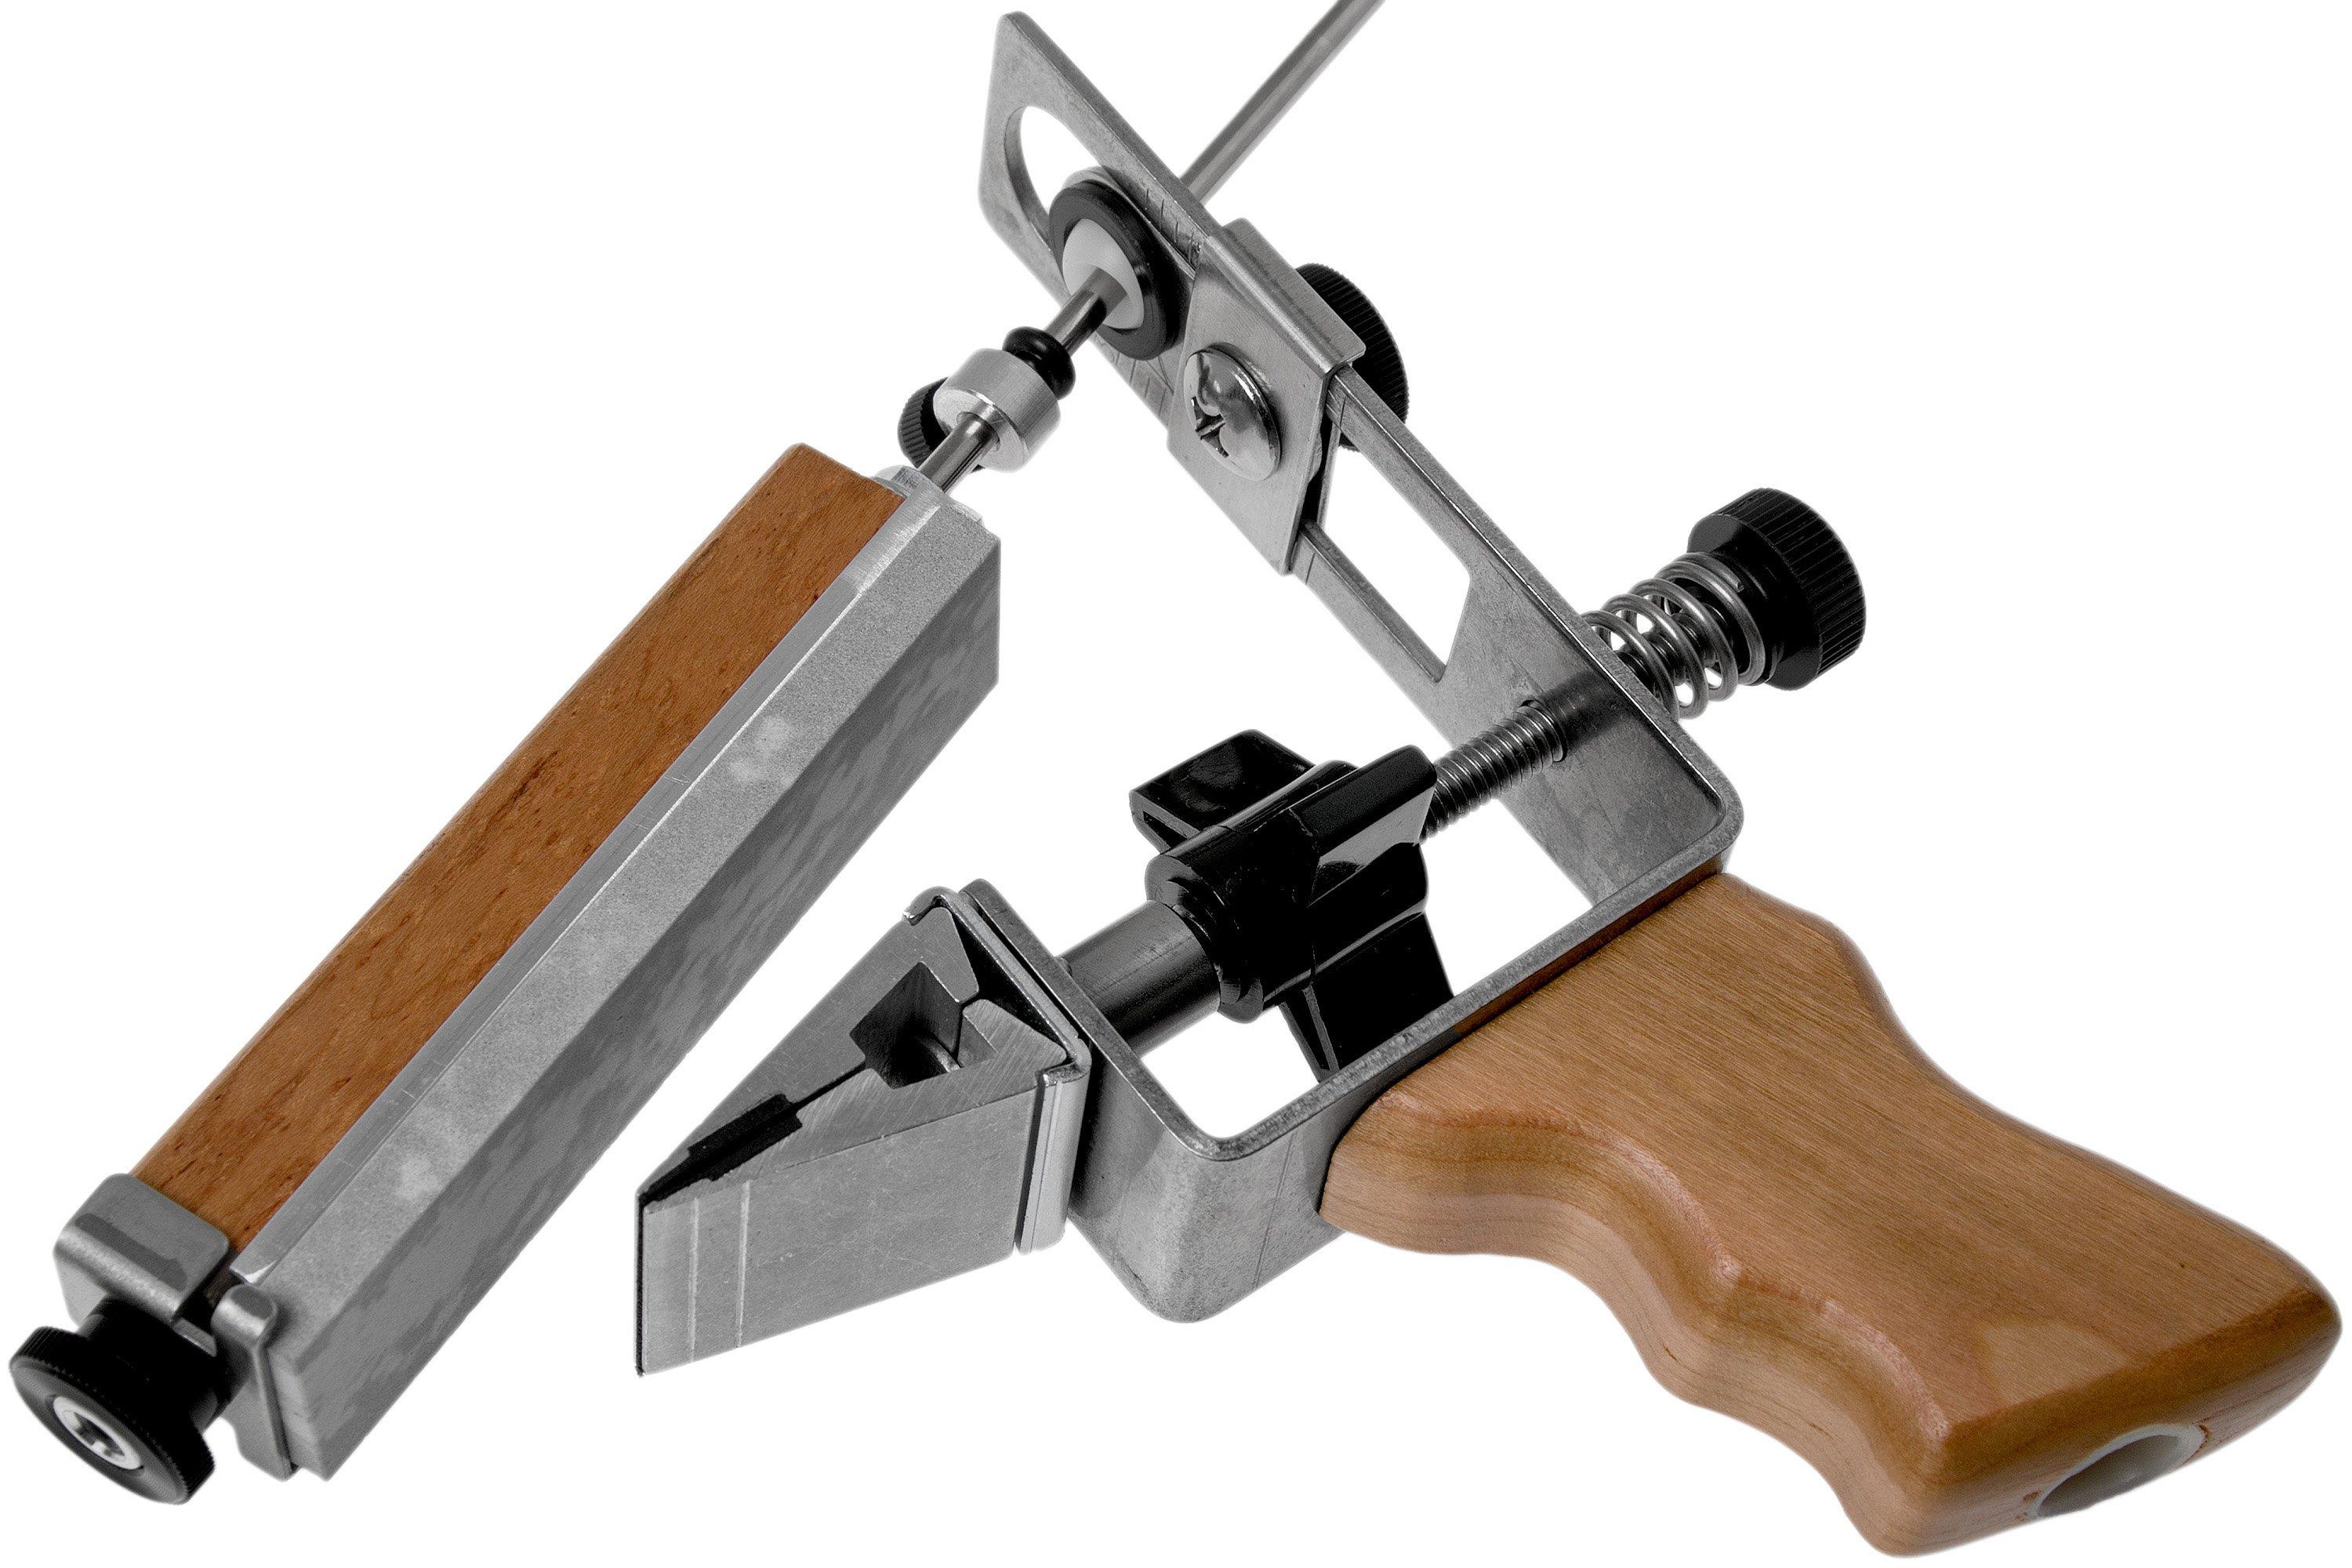 KME Sharpeners Knife Sharpening System, R.P.S.H. Combo Kit, Plastic Case